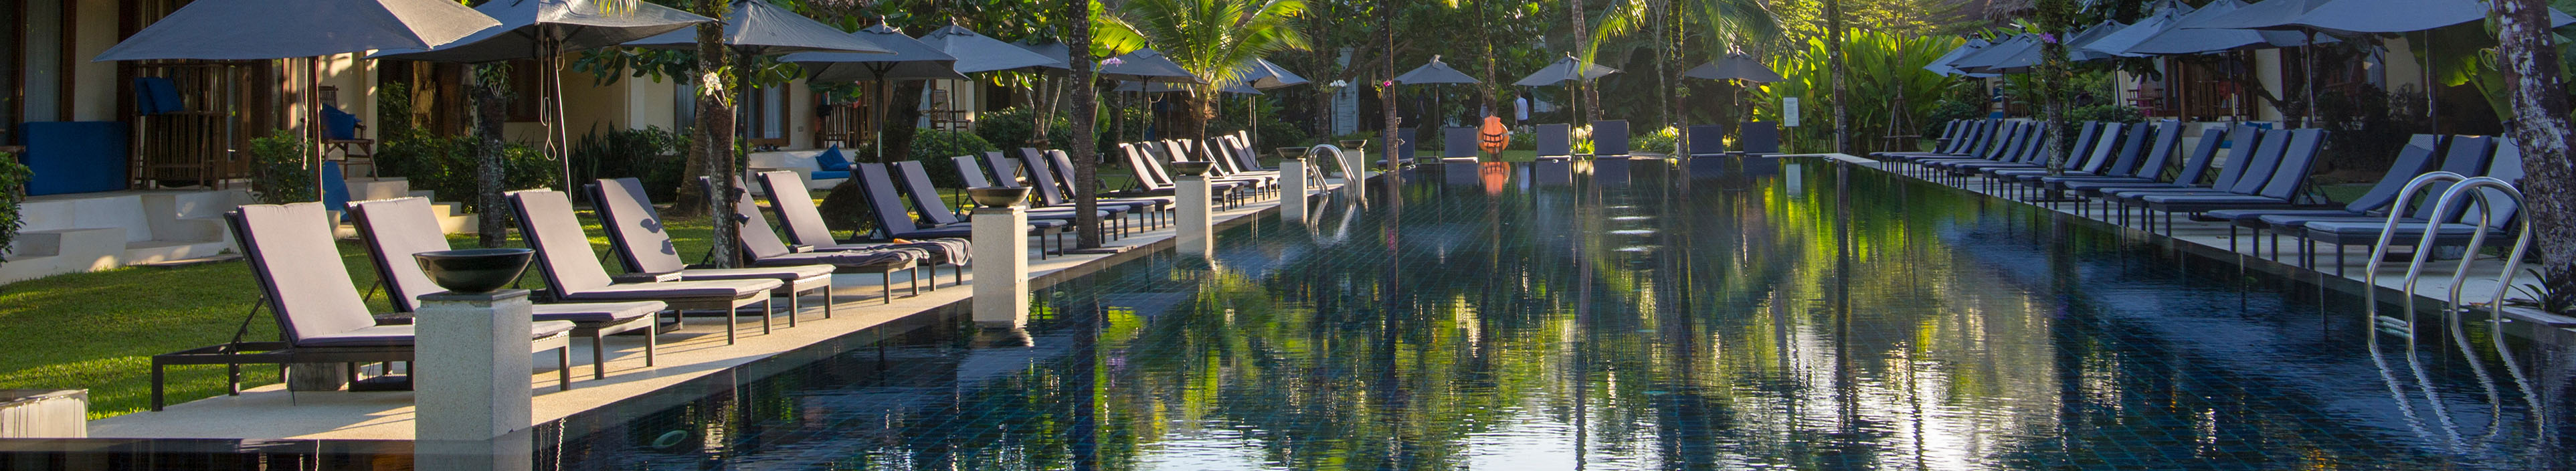 Sonnenschirme und Liegen am Pool, Hotel Thailand